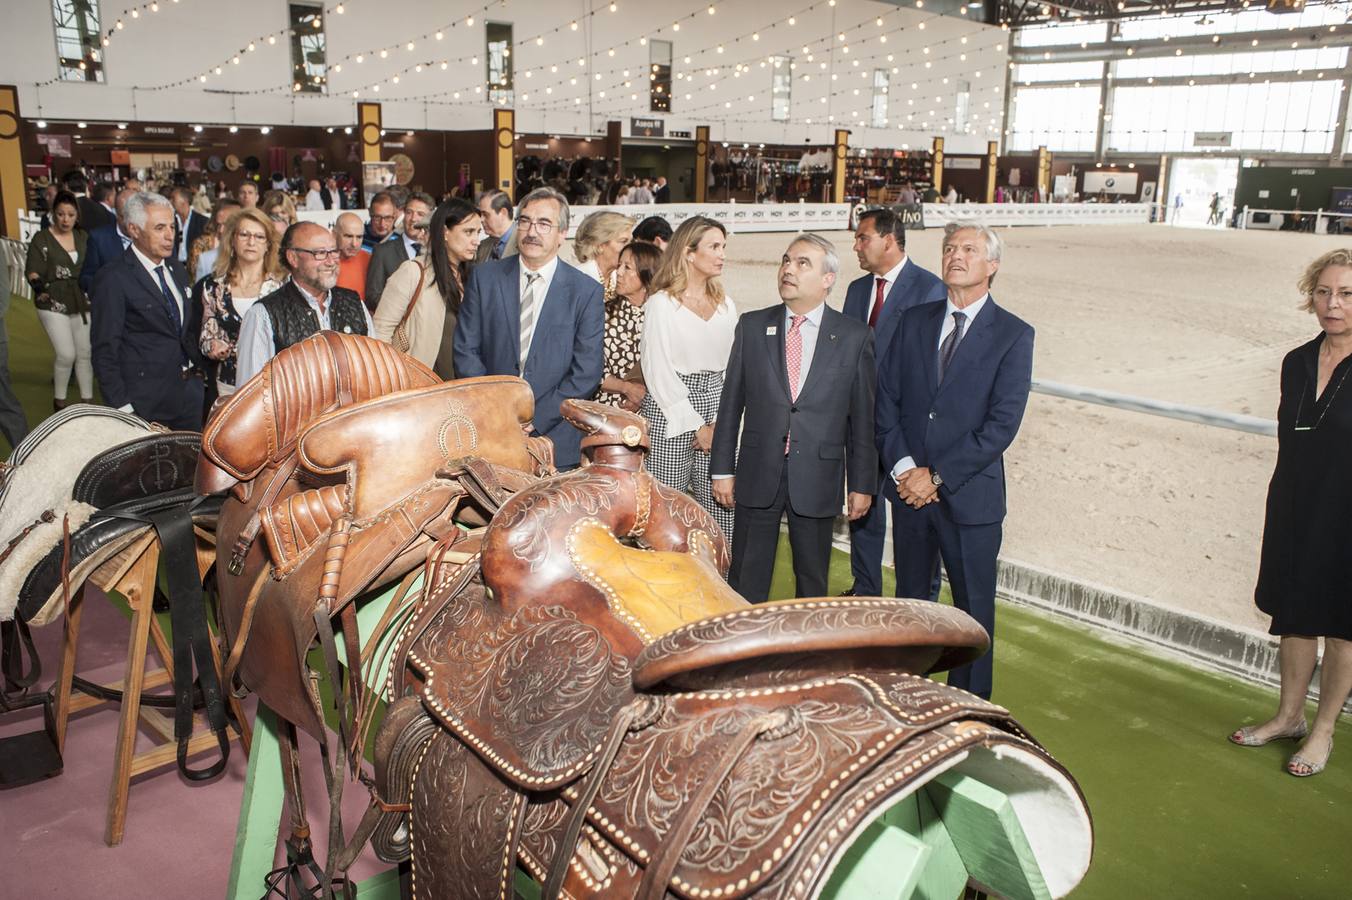 La Feria del Caballo y del Toro de Extremadura (Ecuextre) ha arrancado con el acto de homenaje a Juan Antonio Ruiz 'Espartaco', que es el protagonista de esta décima edición, la cual incluye una muestra del torero de Espartinas que exhibe distintos objetivos vinculados con su trayectoria.